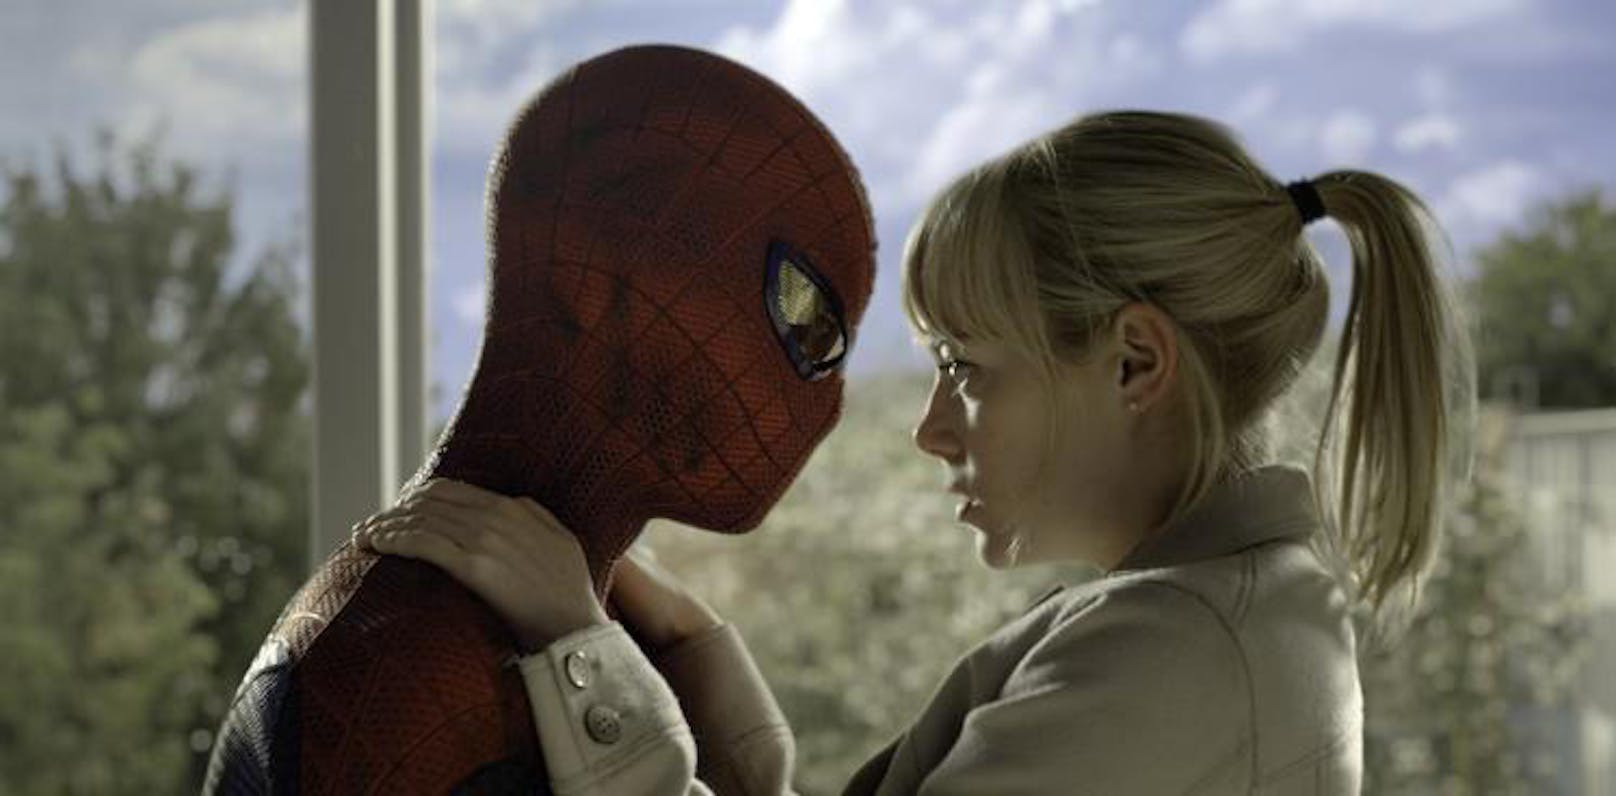 Andrew Garfield und Emma Stone in "The Amazing Spider-Man"